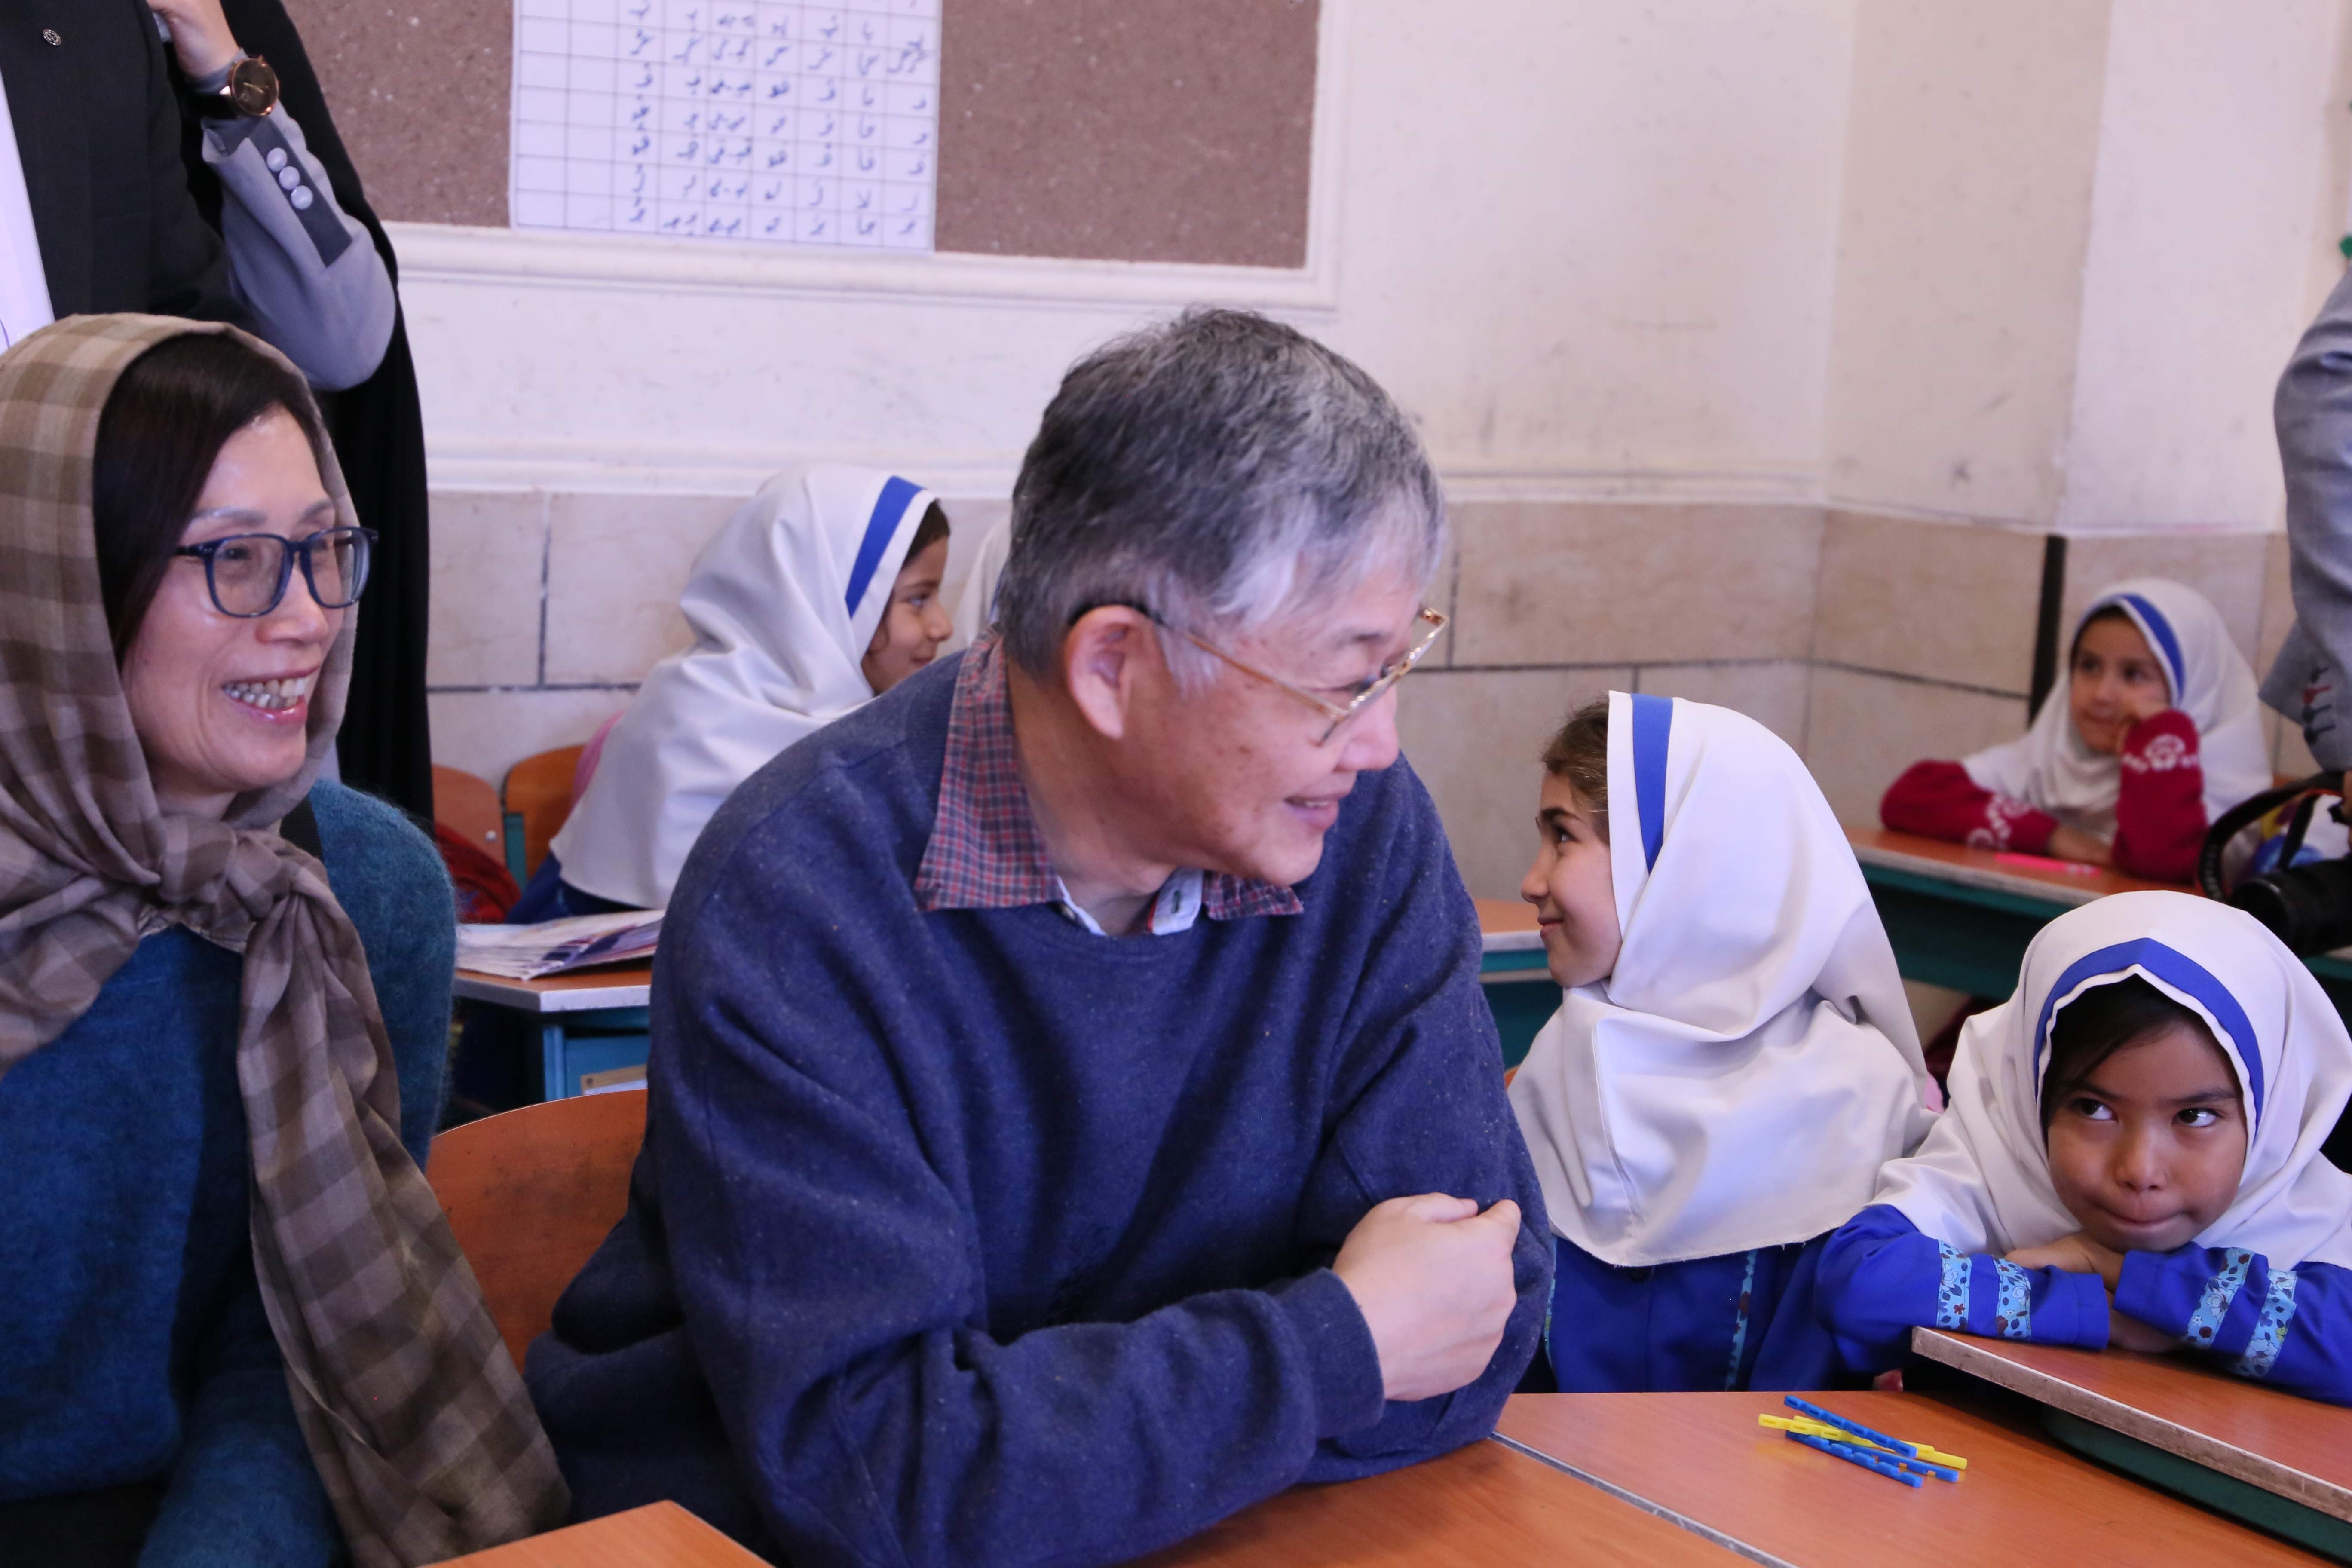 施永青先生及太太與伊朗女孩一同上課。